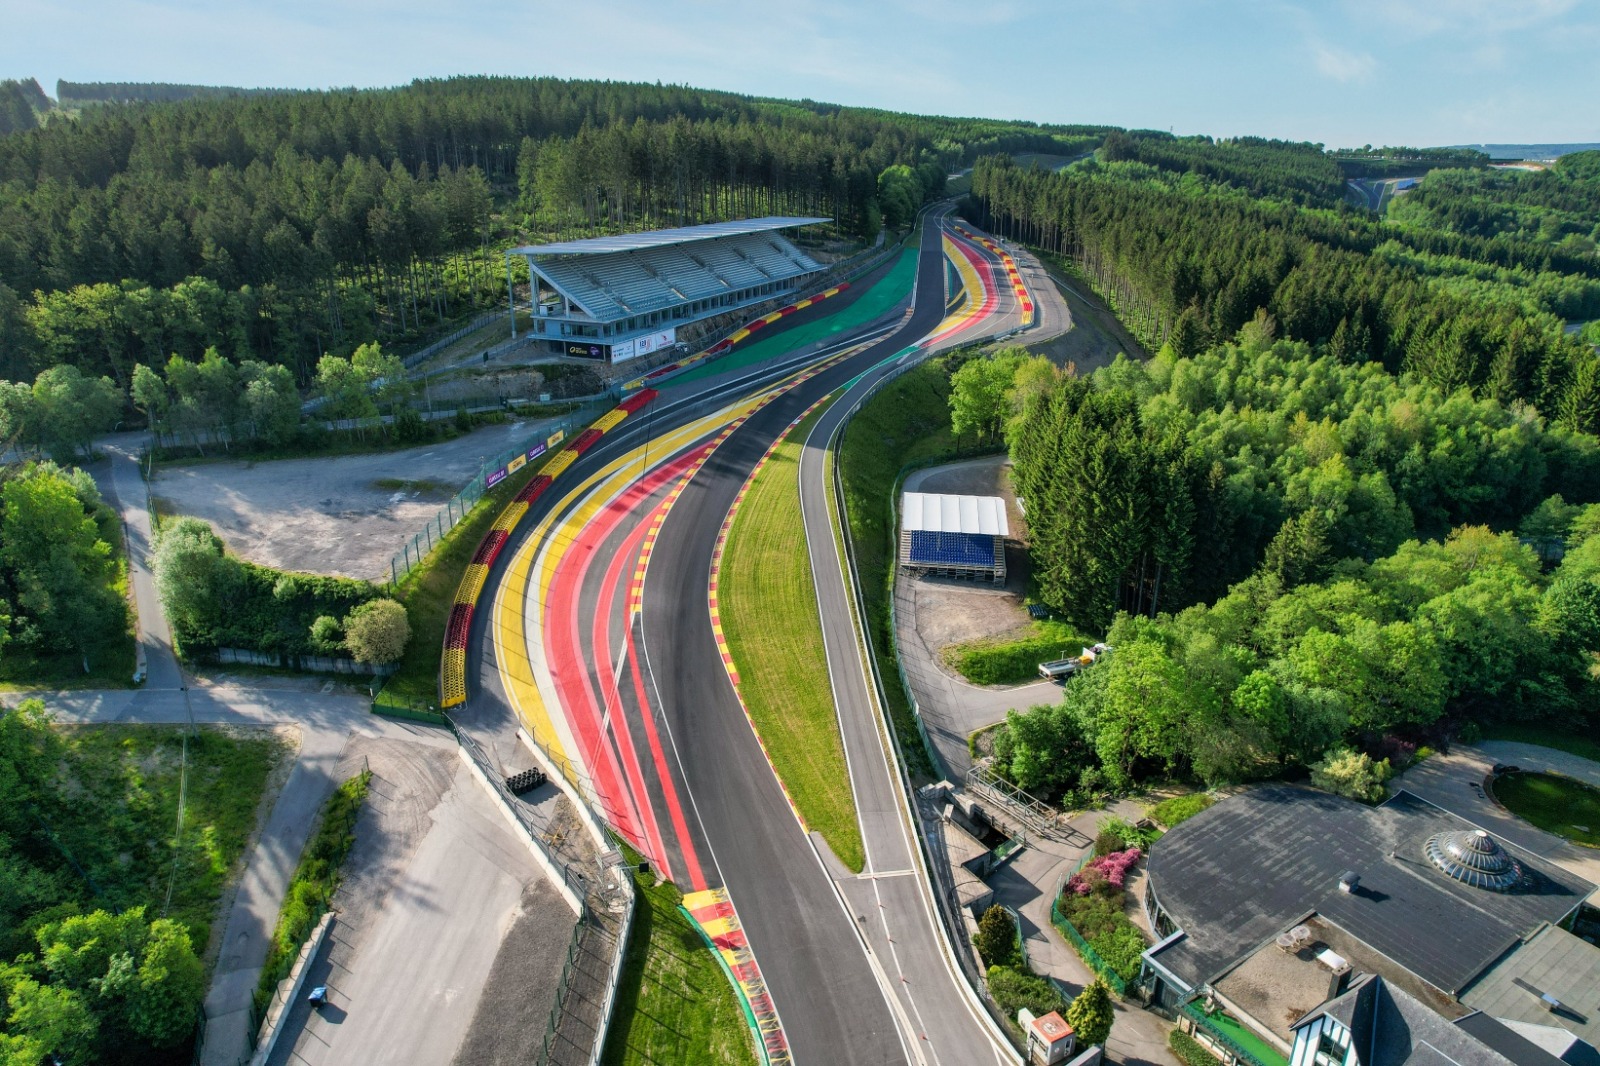 Vue aérienne du Circuit de Spa-Francorchamps